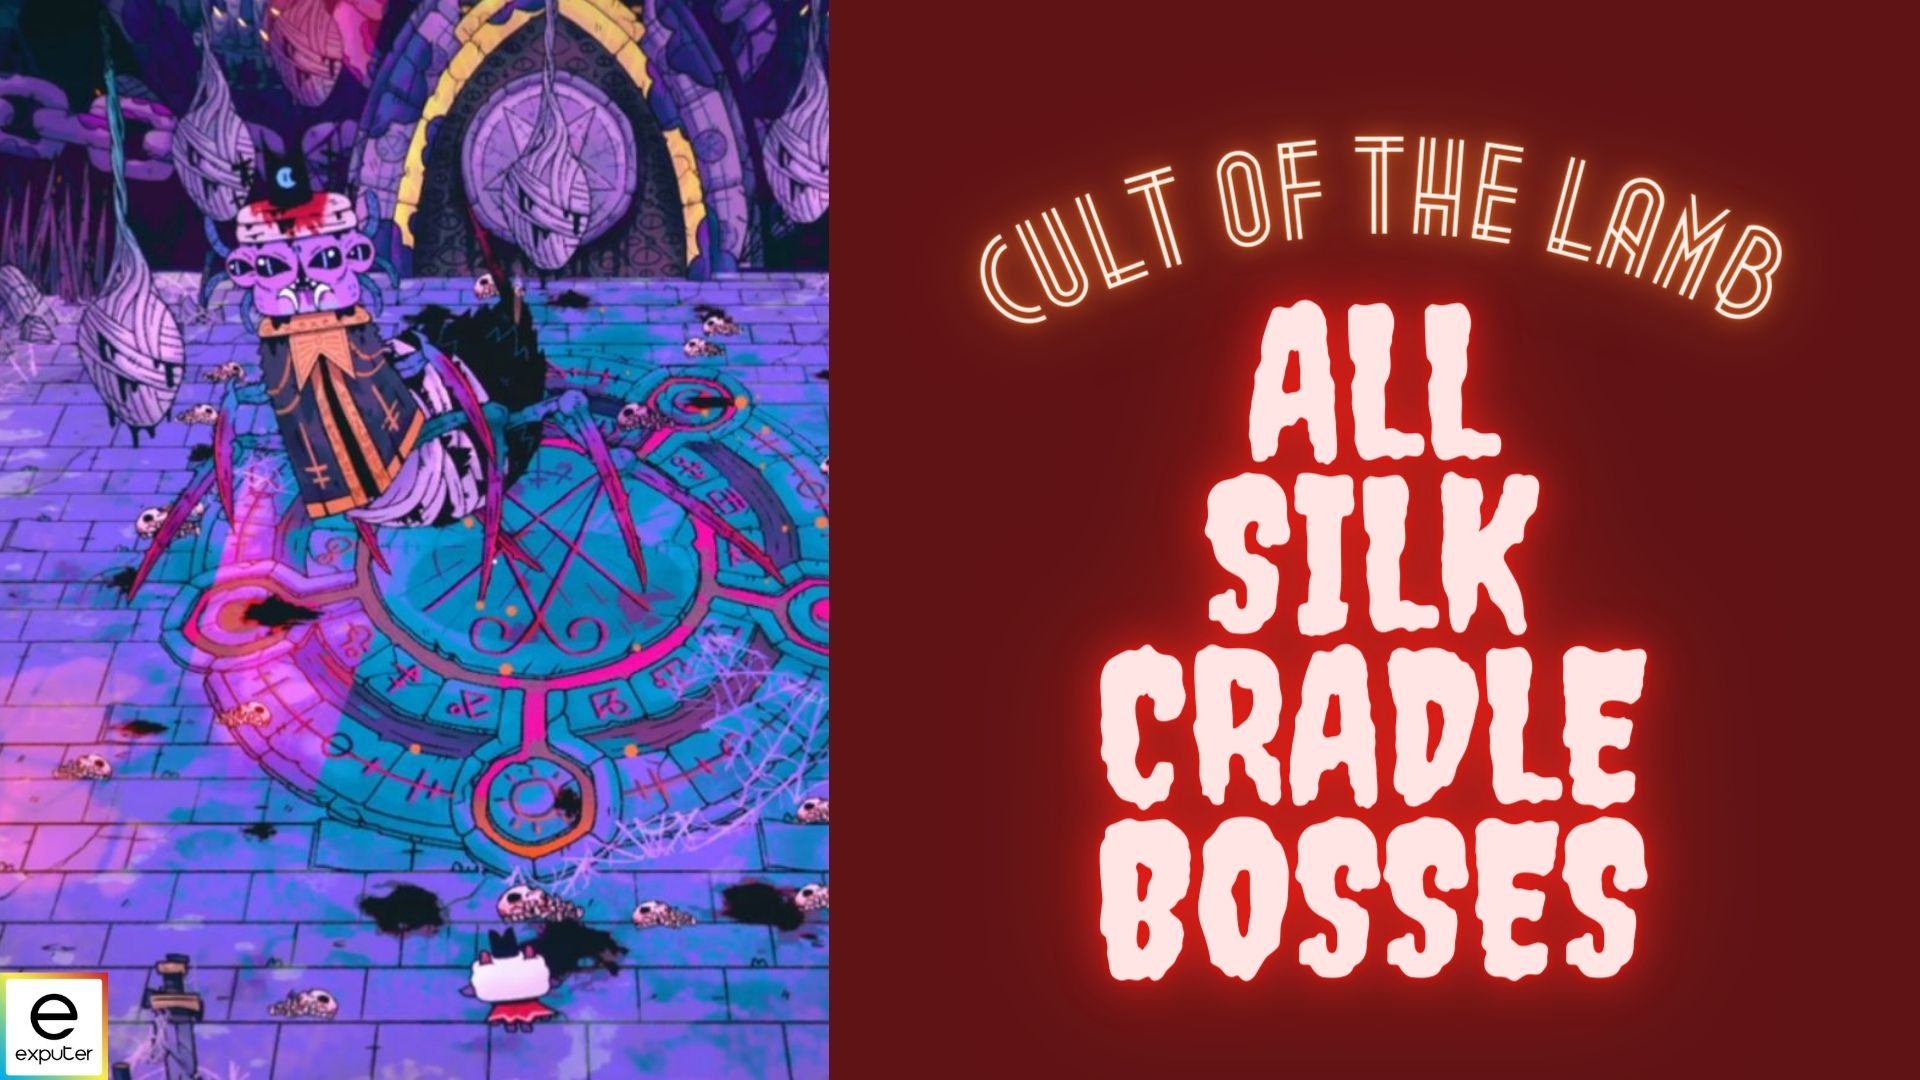 Silk Cradle all bosses cult of the lamb guide